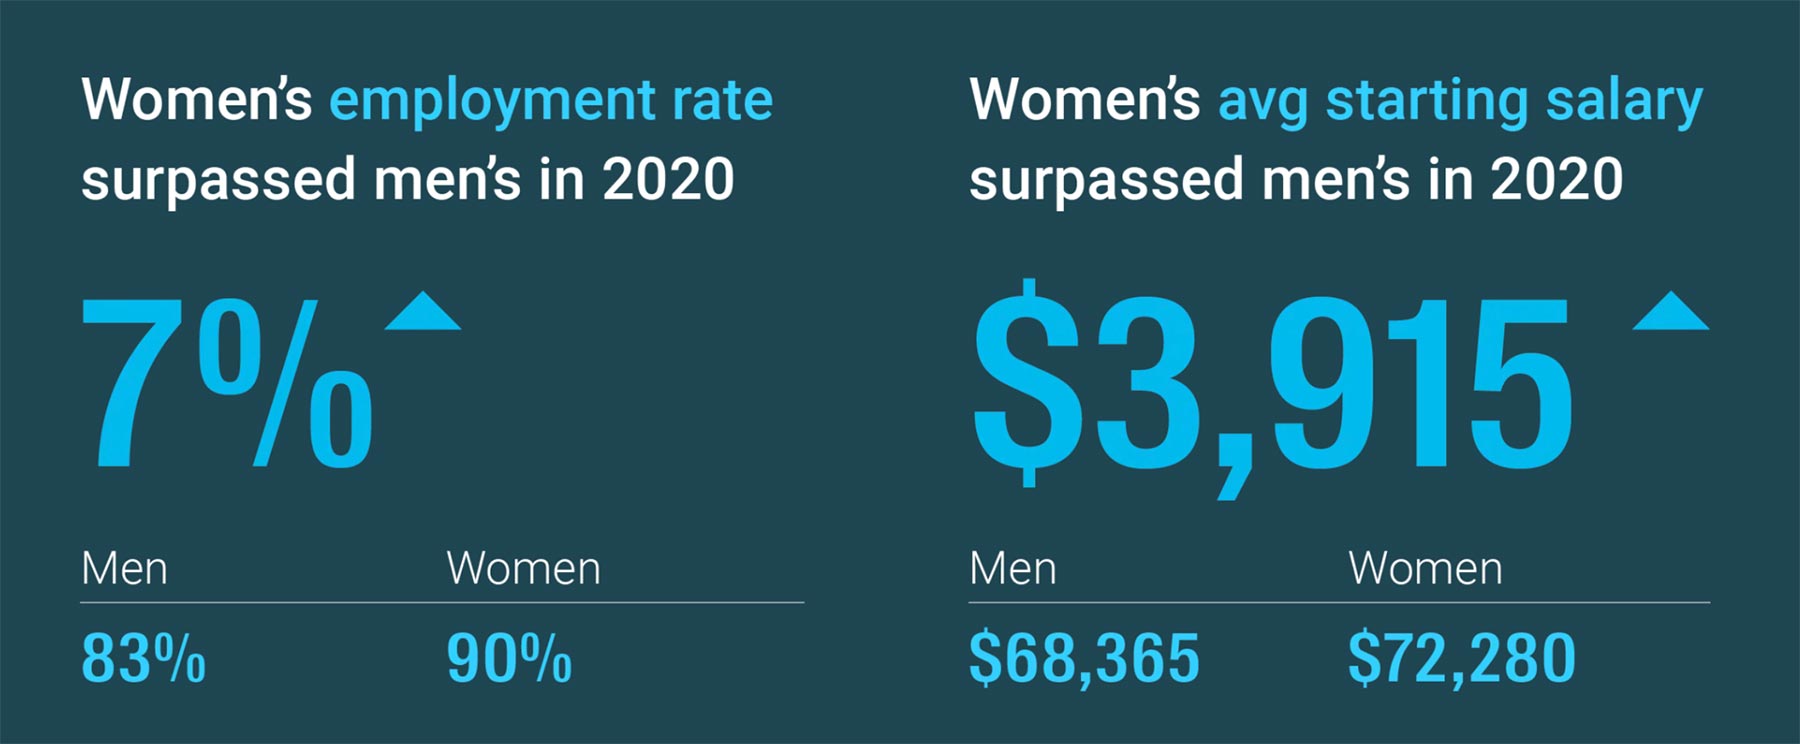 Women's employment rate surpassed men's in 2020